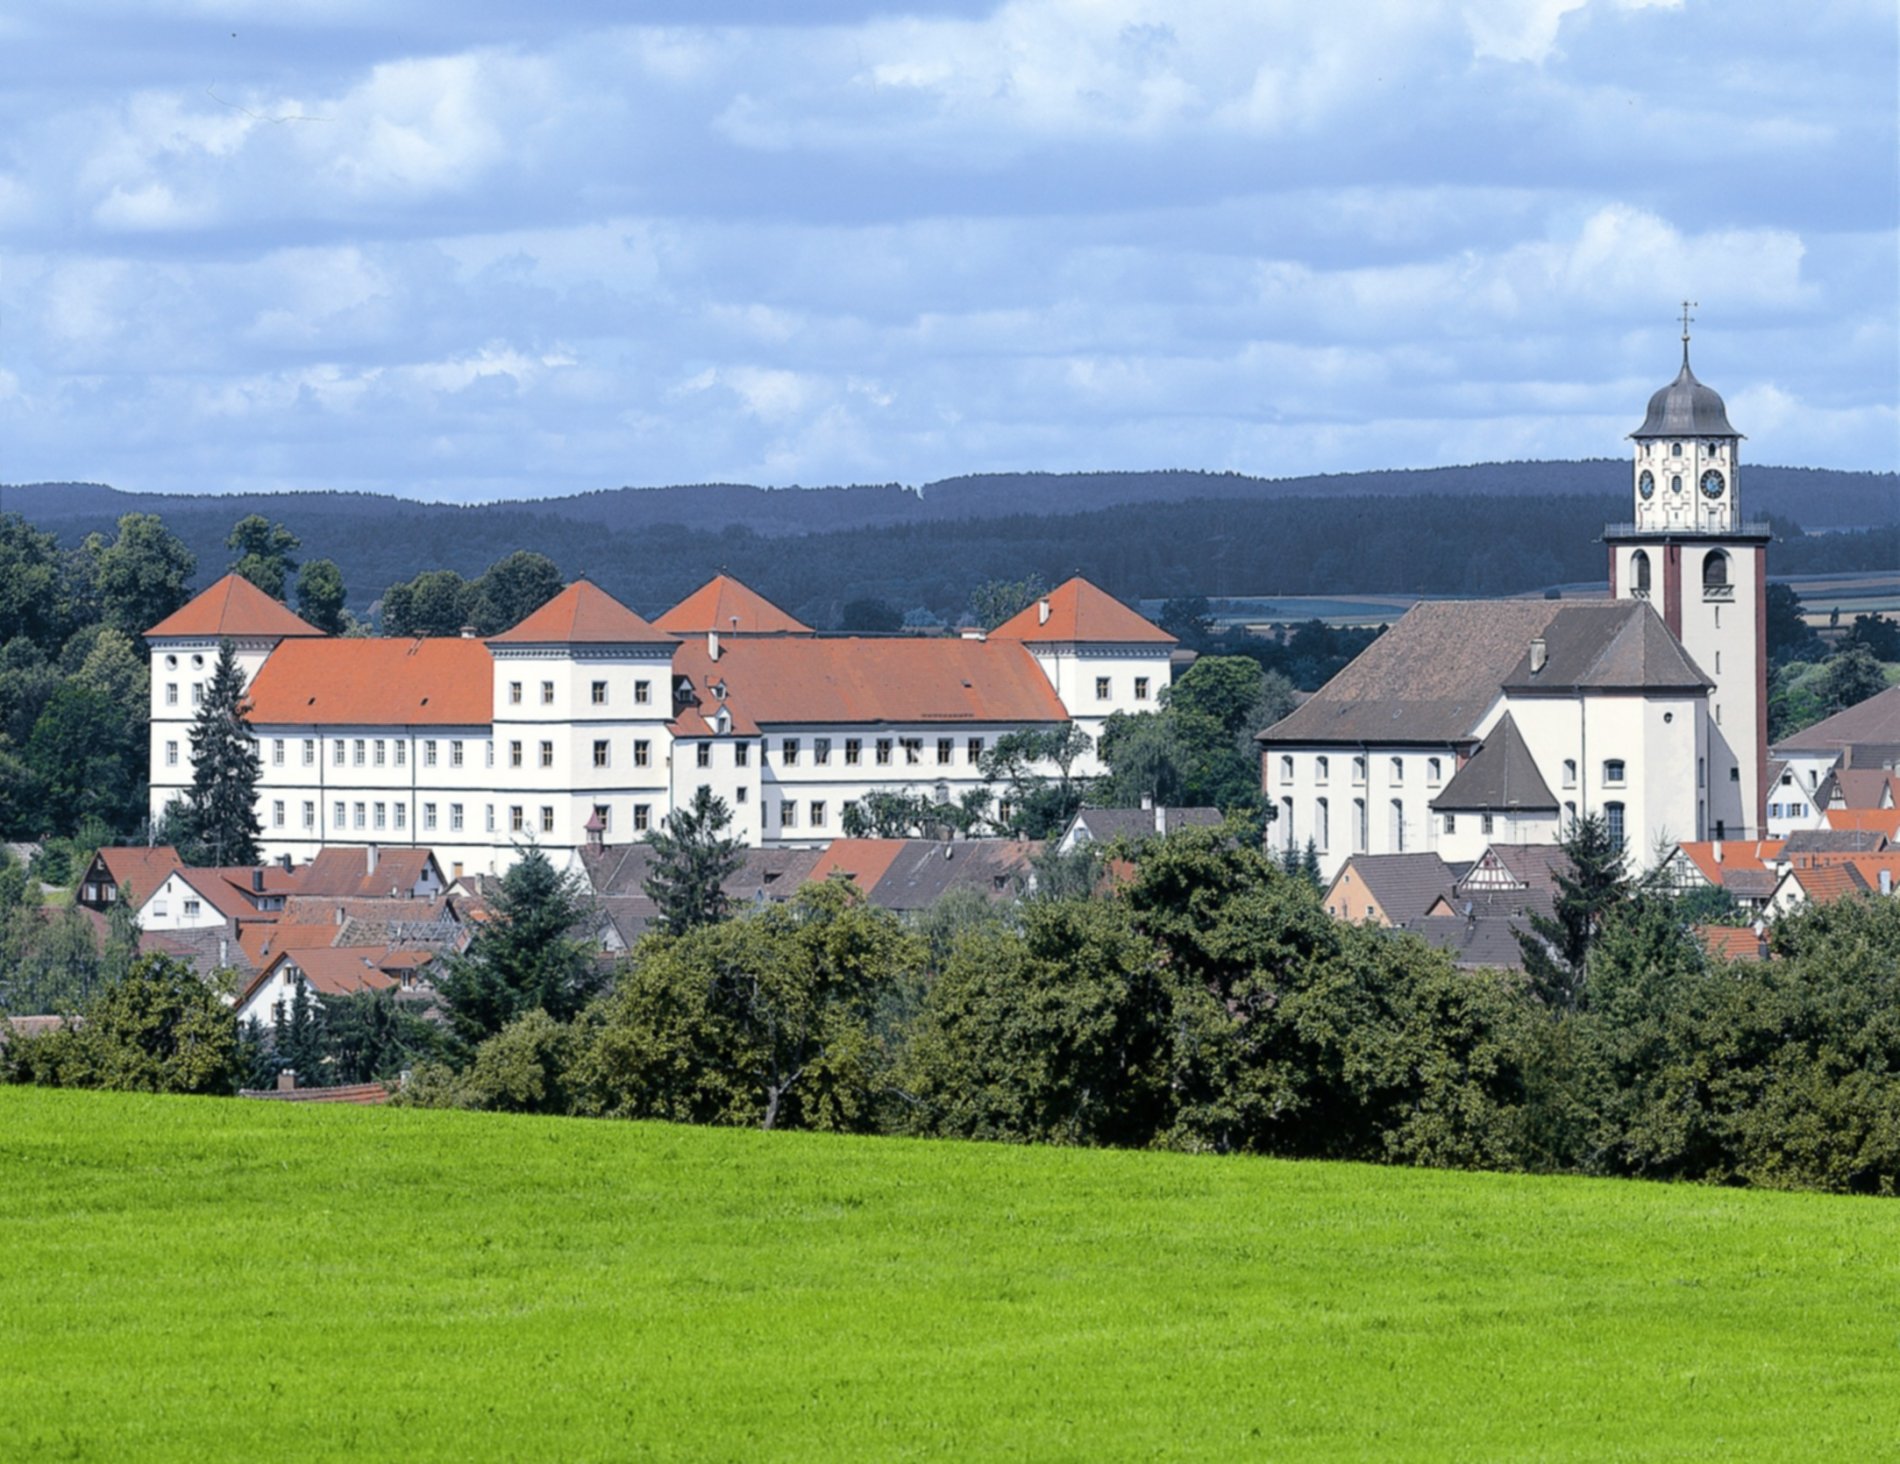 Blick auf Schloss Meßkirch und die Kirche St. Martin